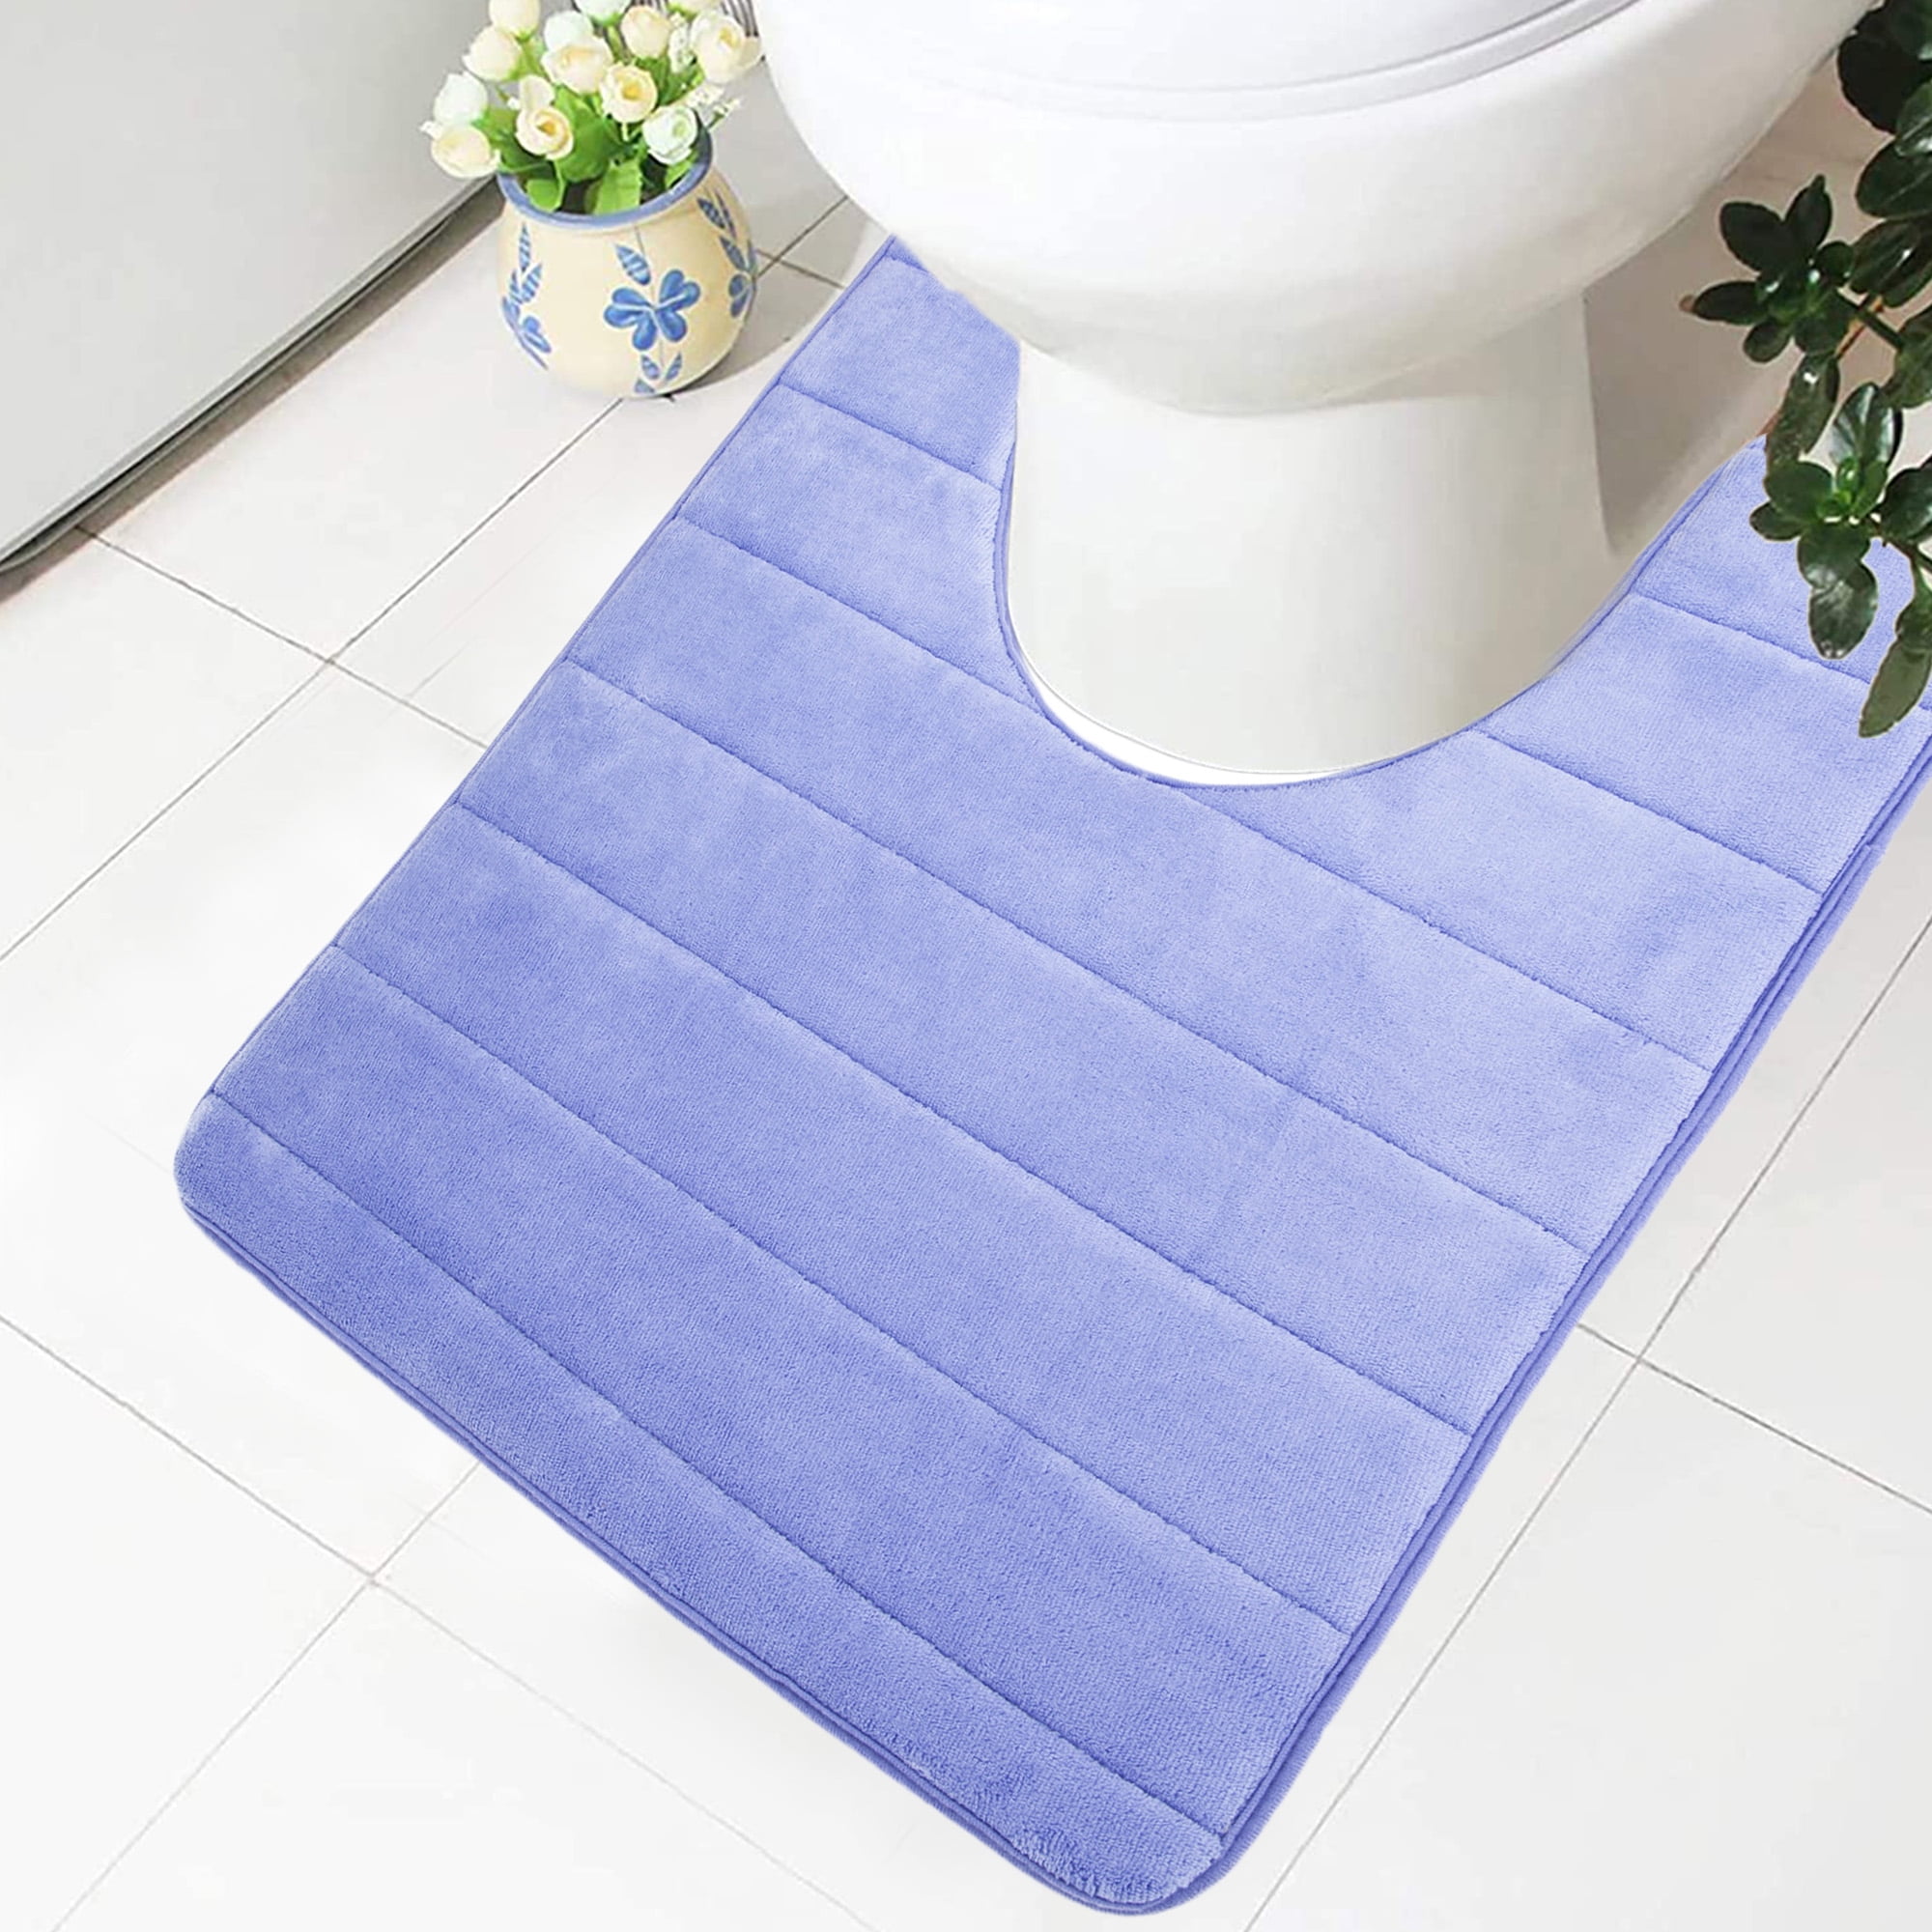 Details about   2PCS Soft Foam Bathroom Rug Bath Shower Mat Pedestal Pebbles Luxury Non Slip 